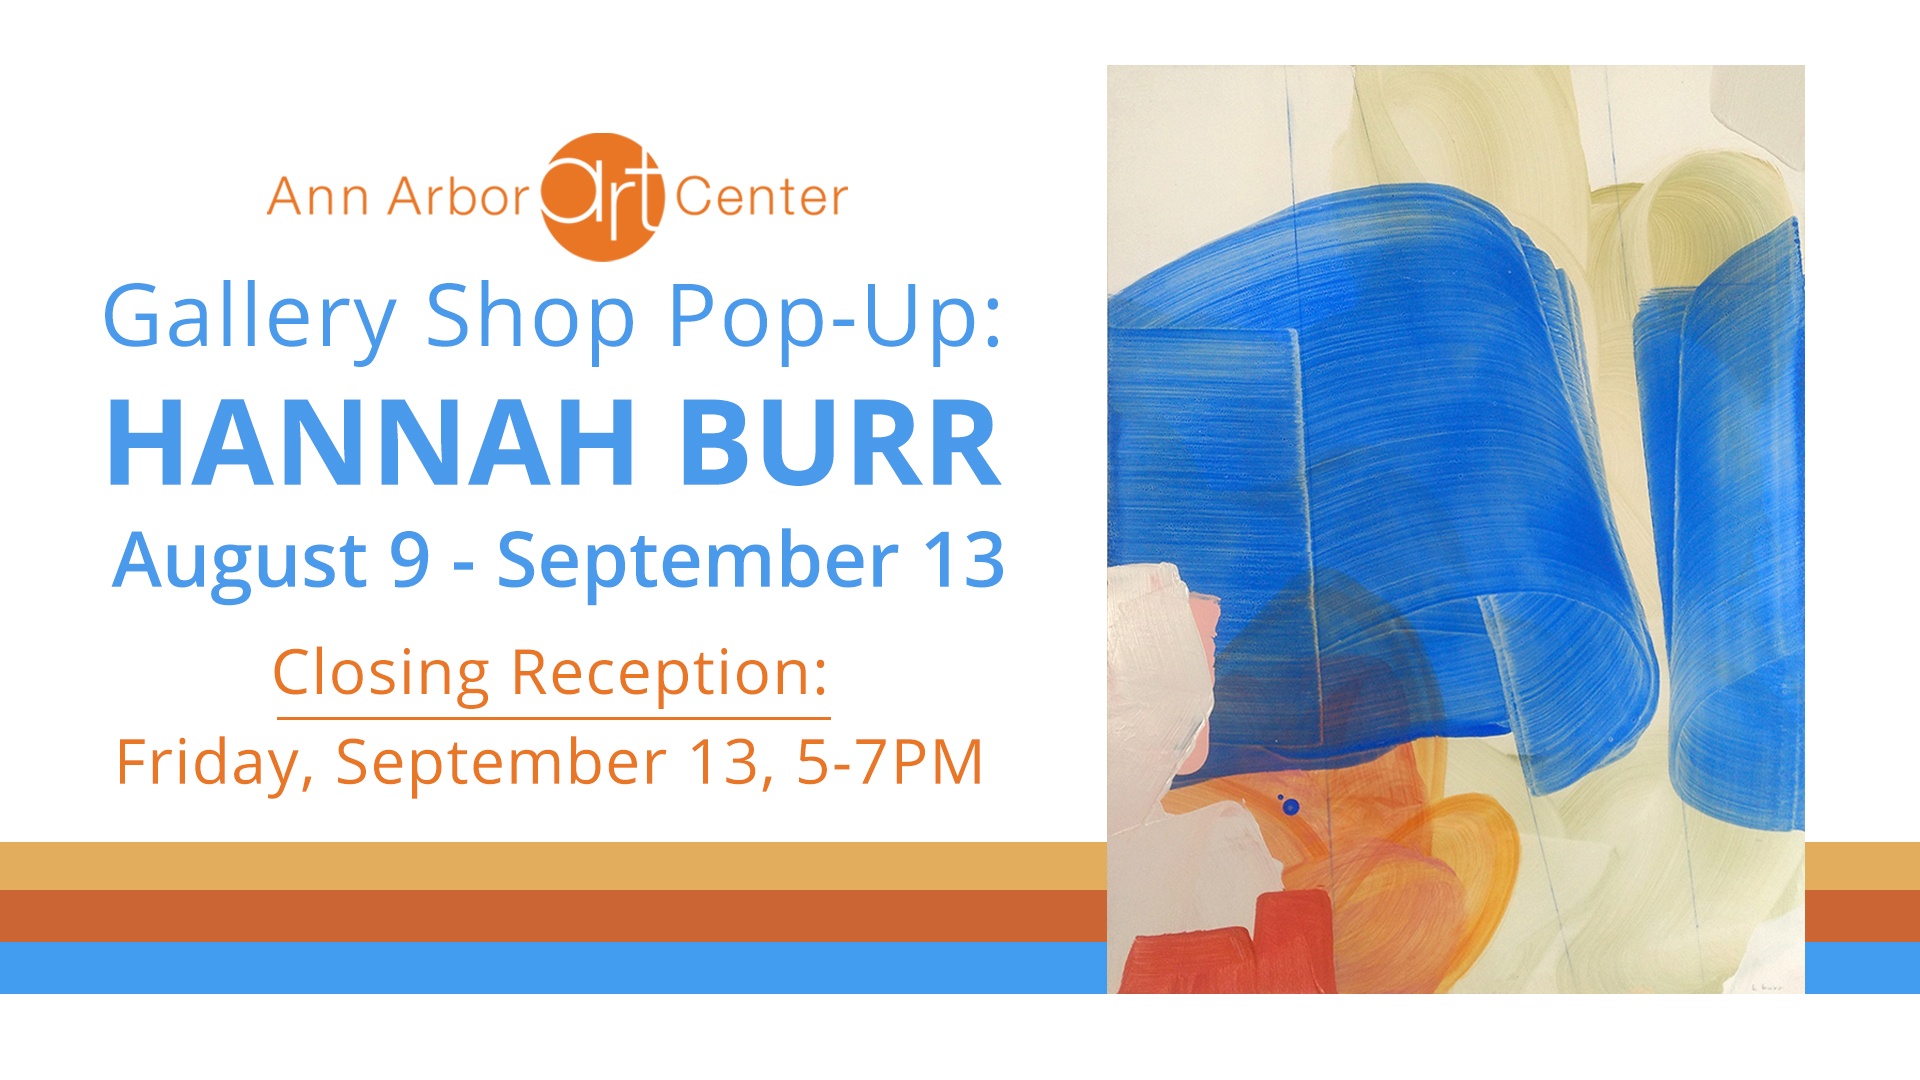 Gallery Shop Pop-Up: Hannah Burr, August 9 - September 13, 2019